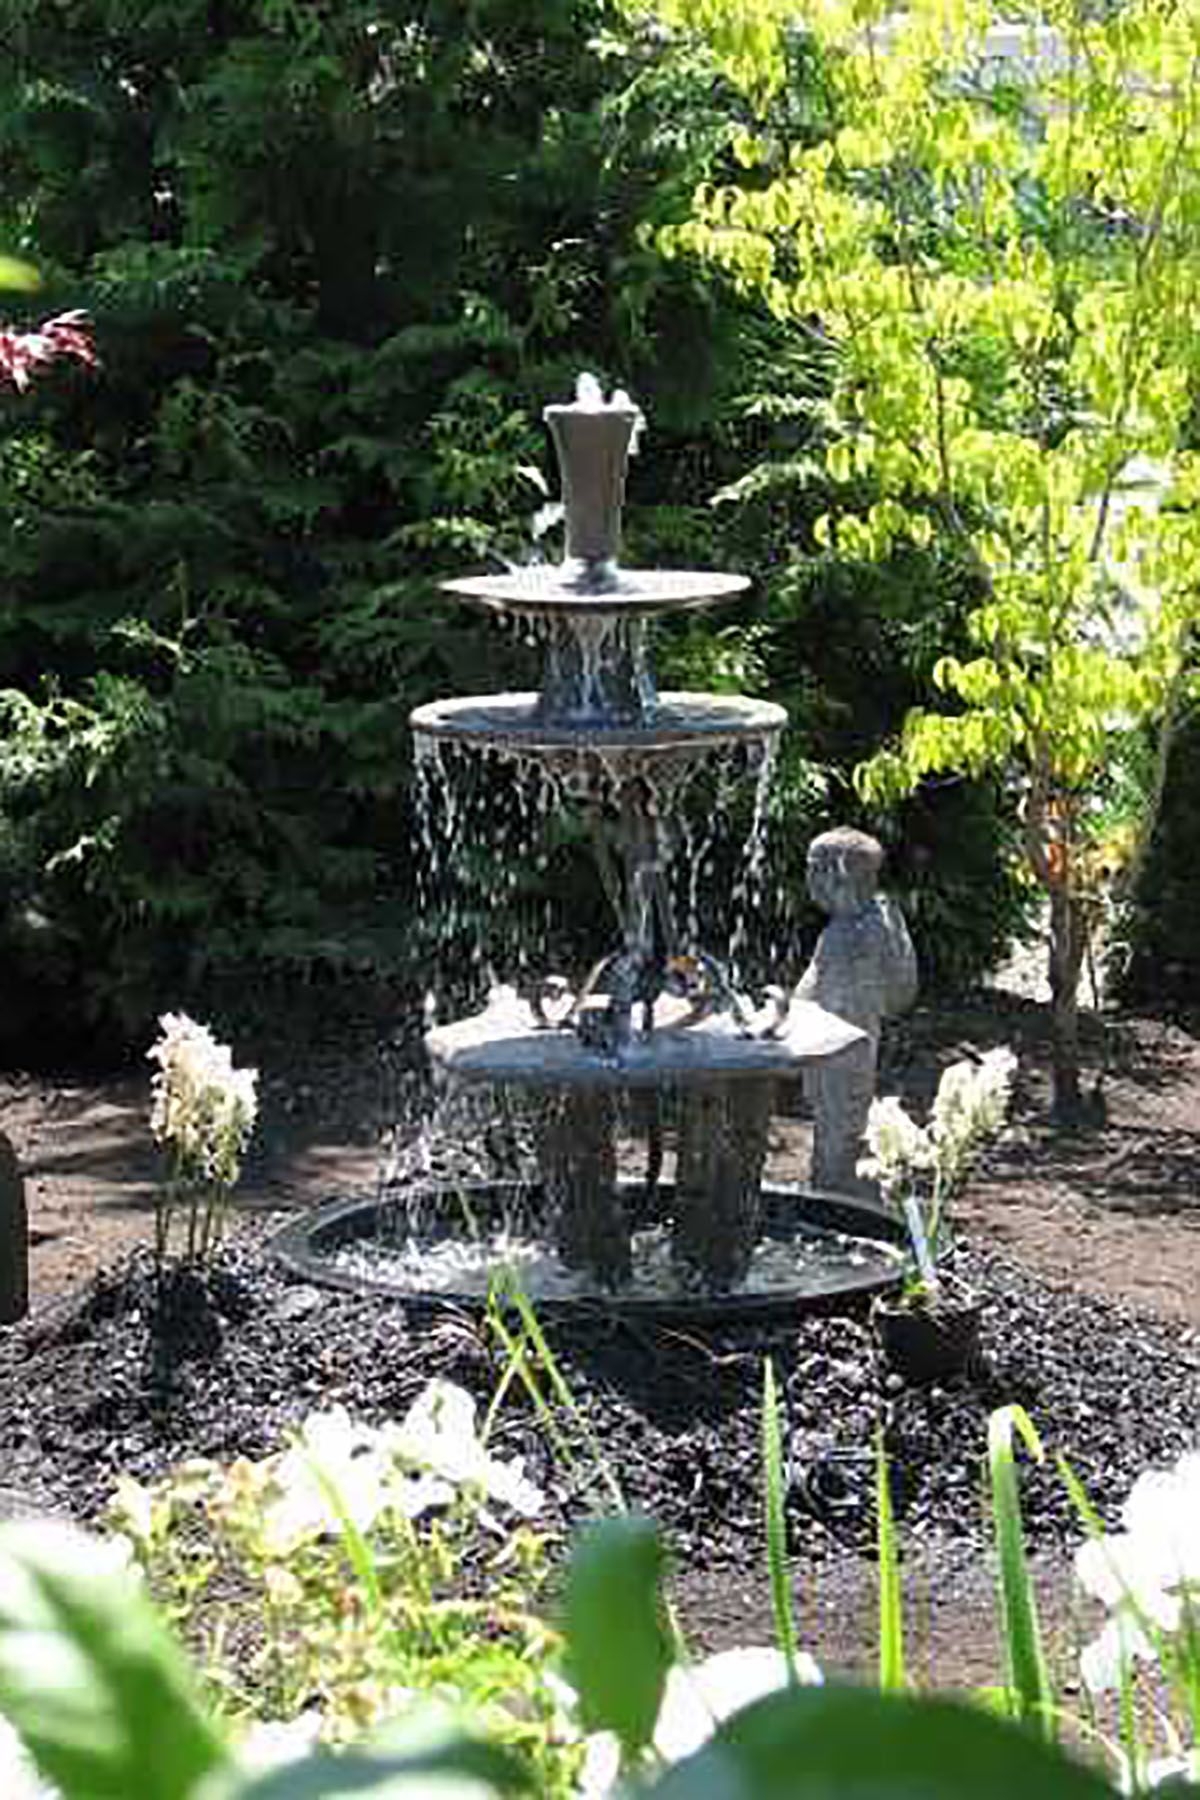 17 outdoor fountain ideas - how to make a garden fountain for your